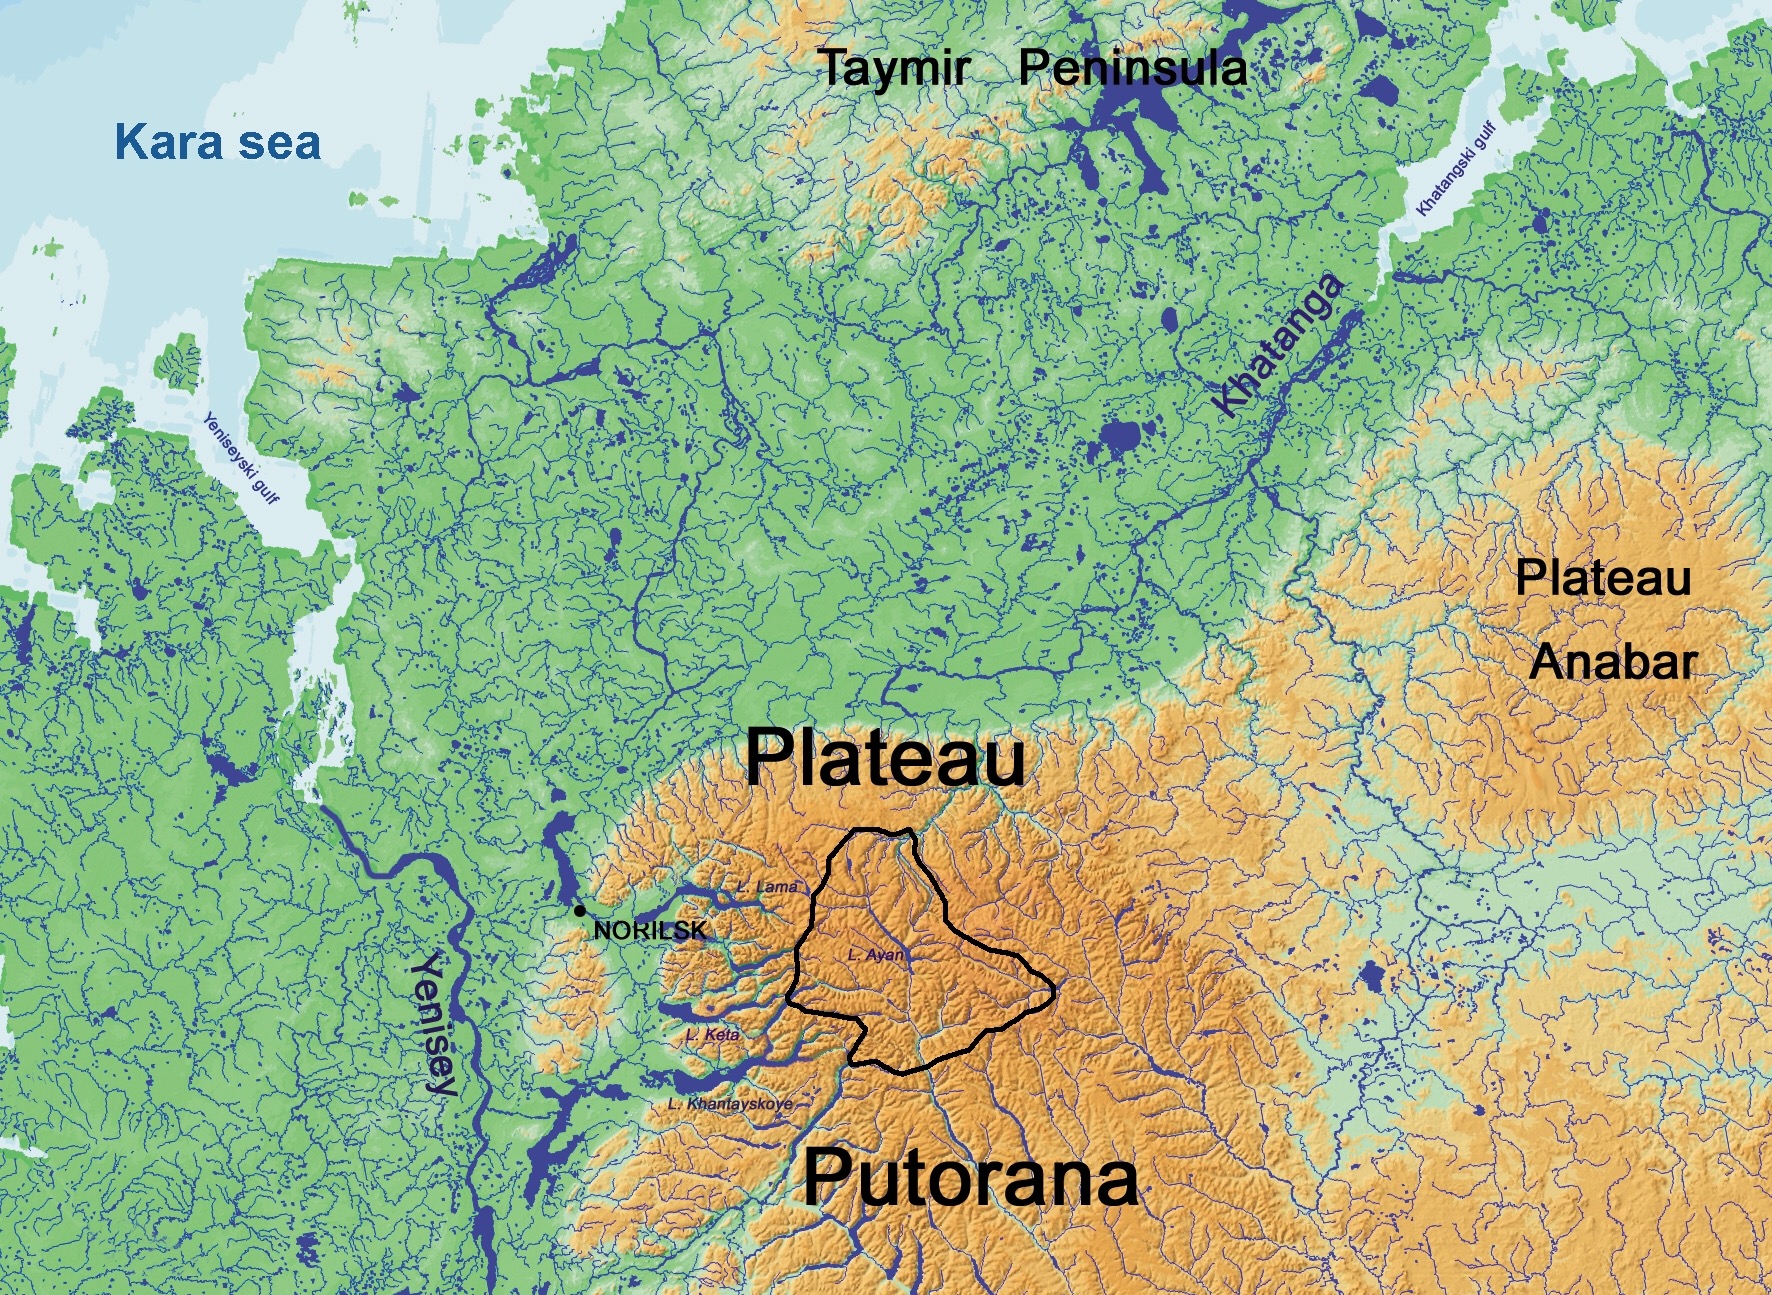 Плато Путорана на карте России